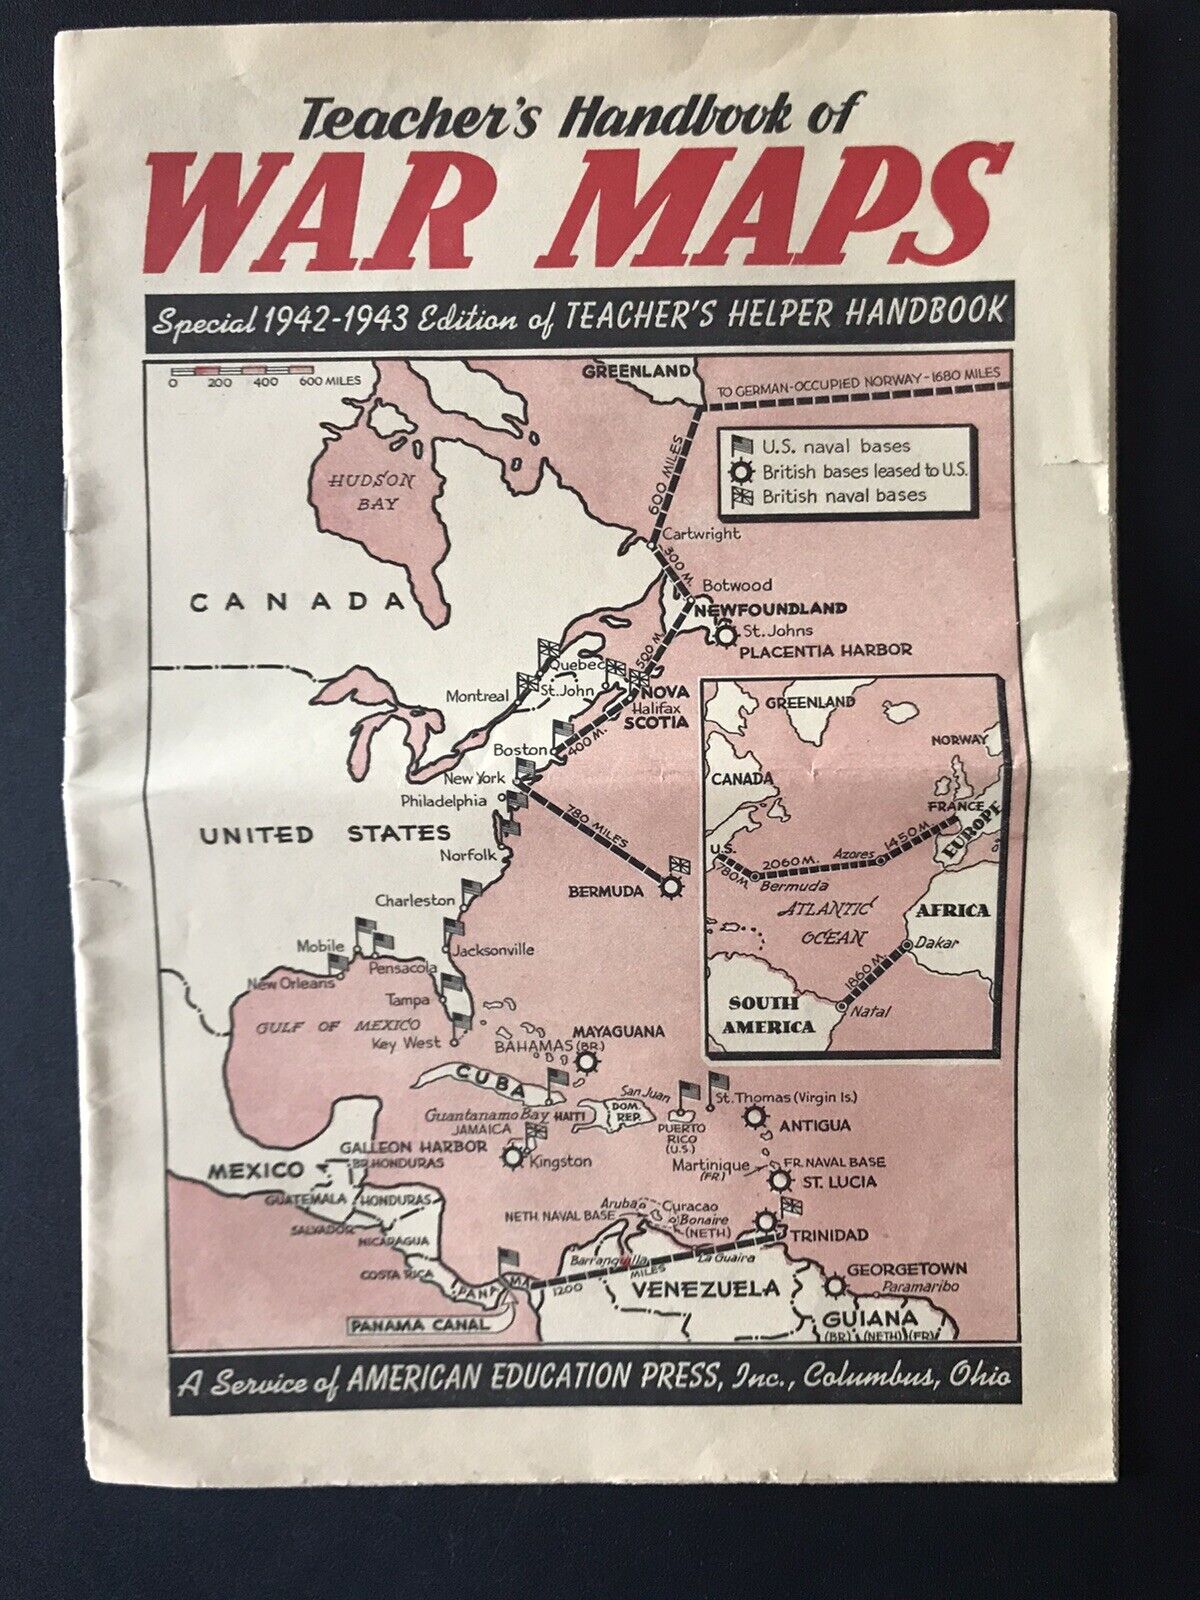 1942-1943 Special Edition “Teacher’s Handbook Of WAR MAPS”